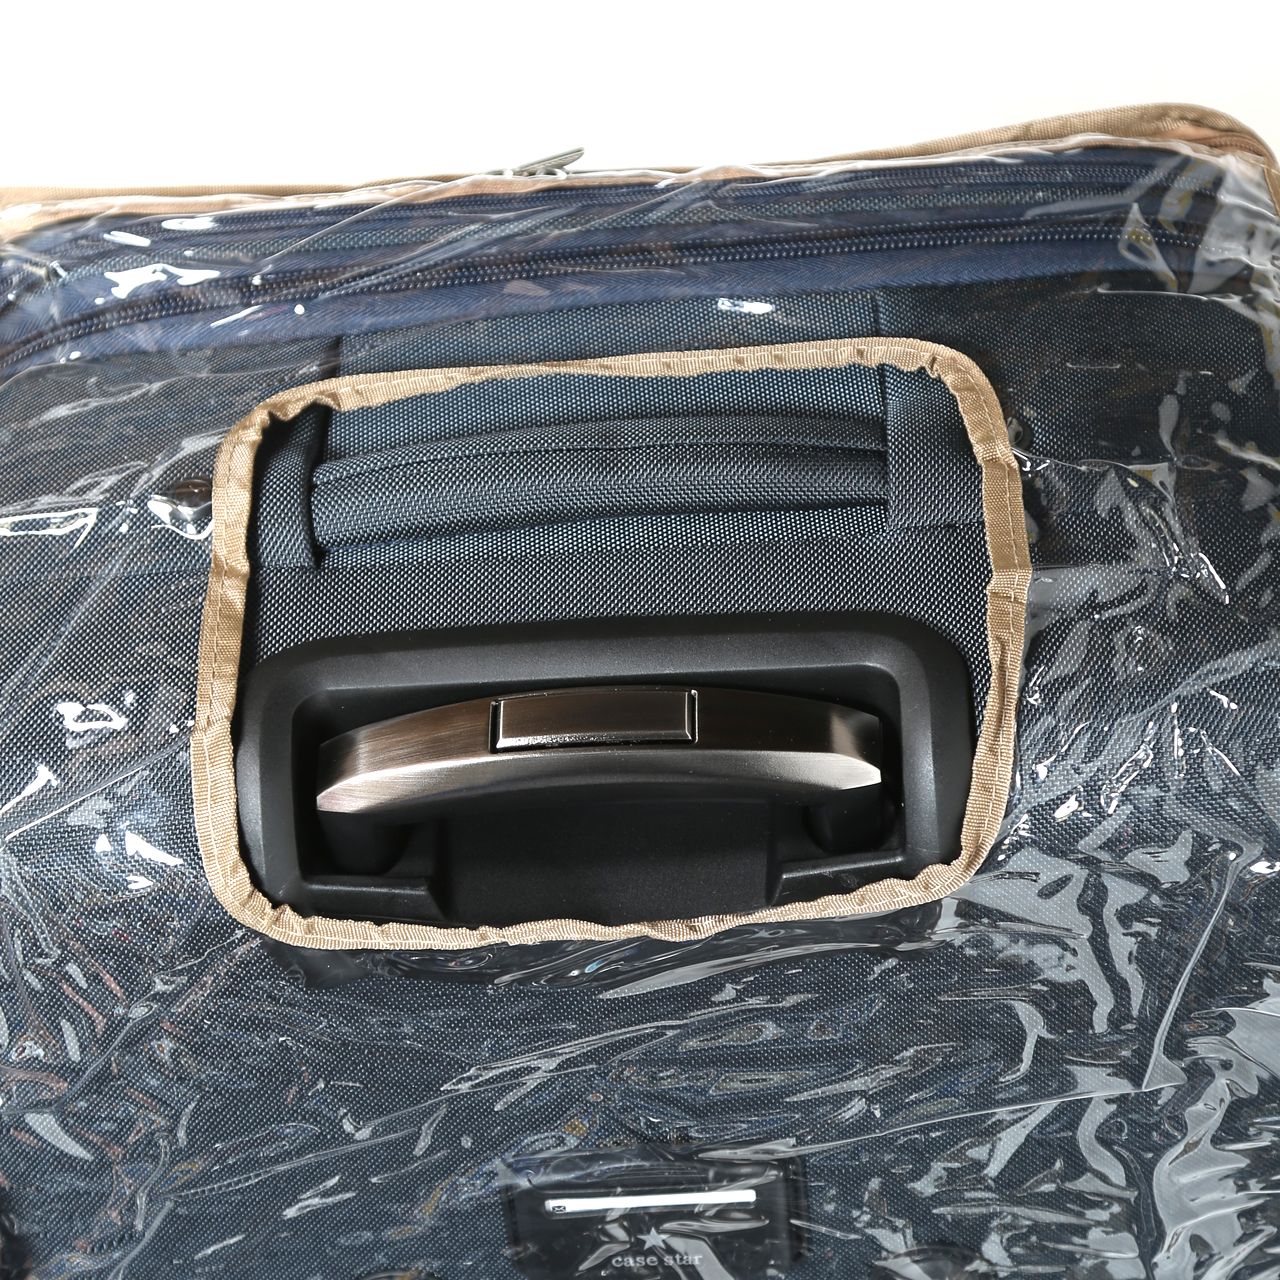  چمدان کیس استار مدل SBC9964 سایز کوچک -  - 15